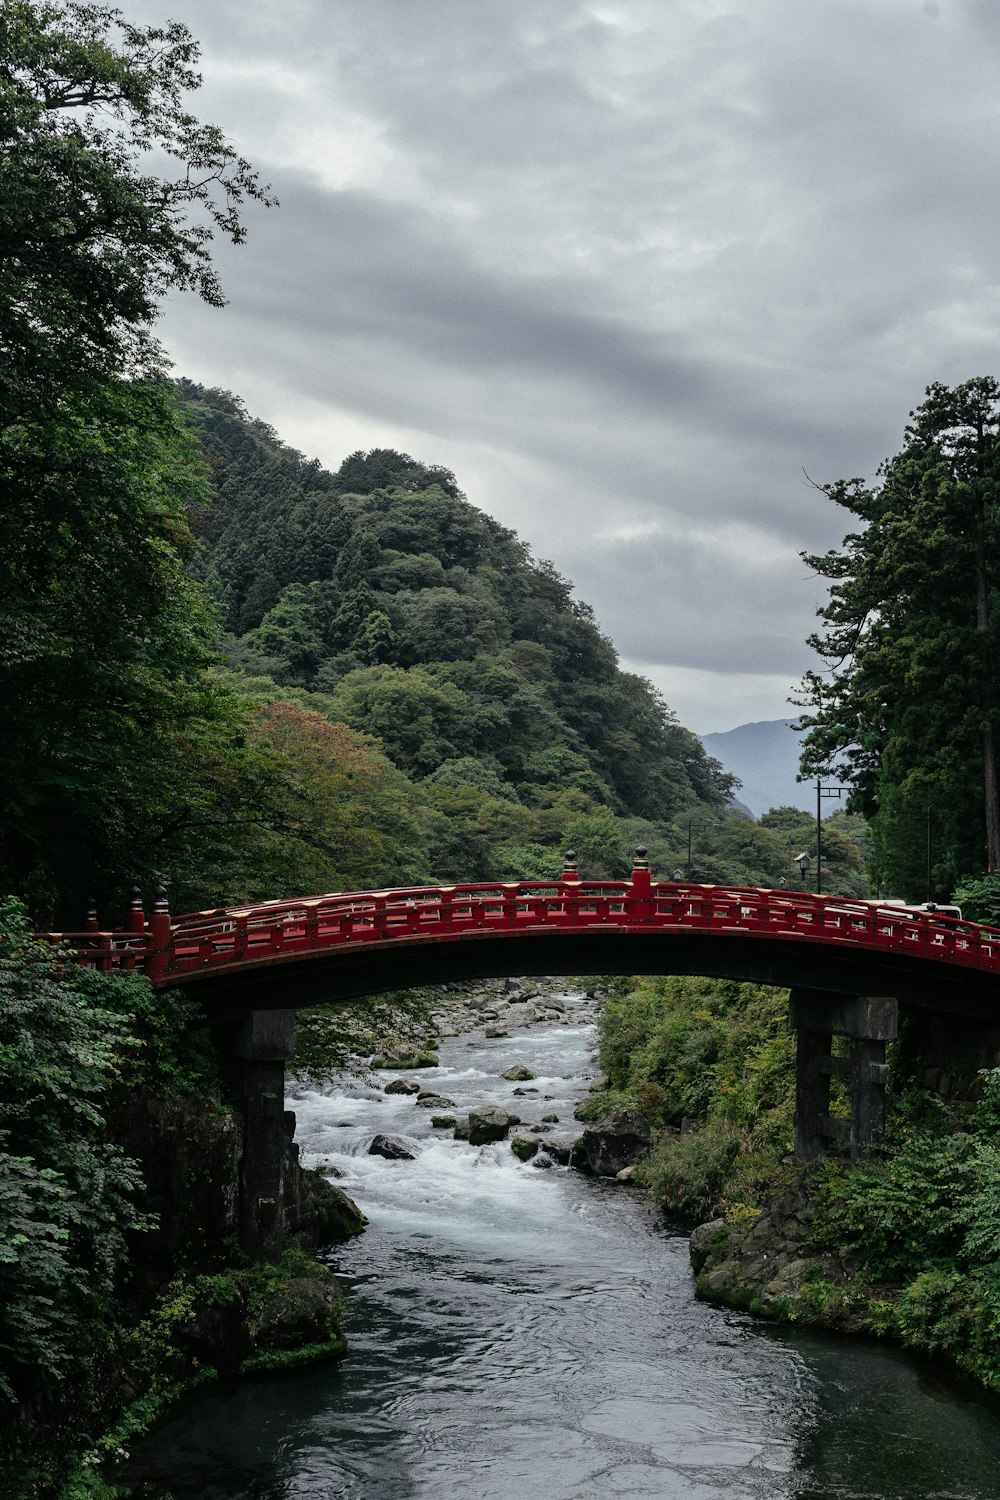 Albero verde vicino al ponte nero e rosso sul torrente che scorre